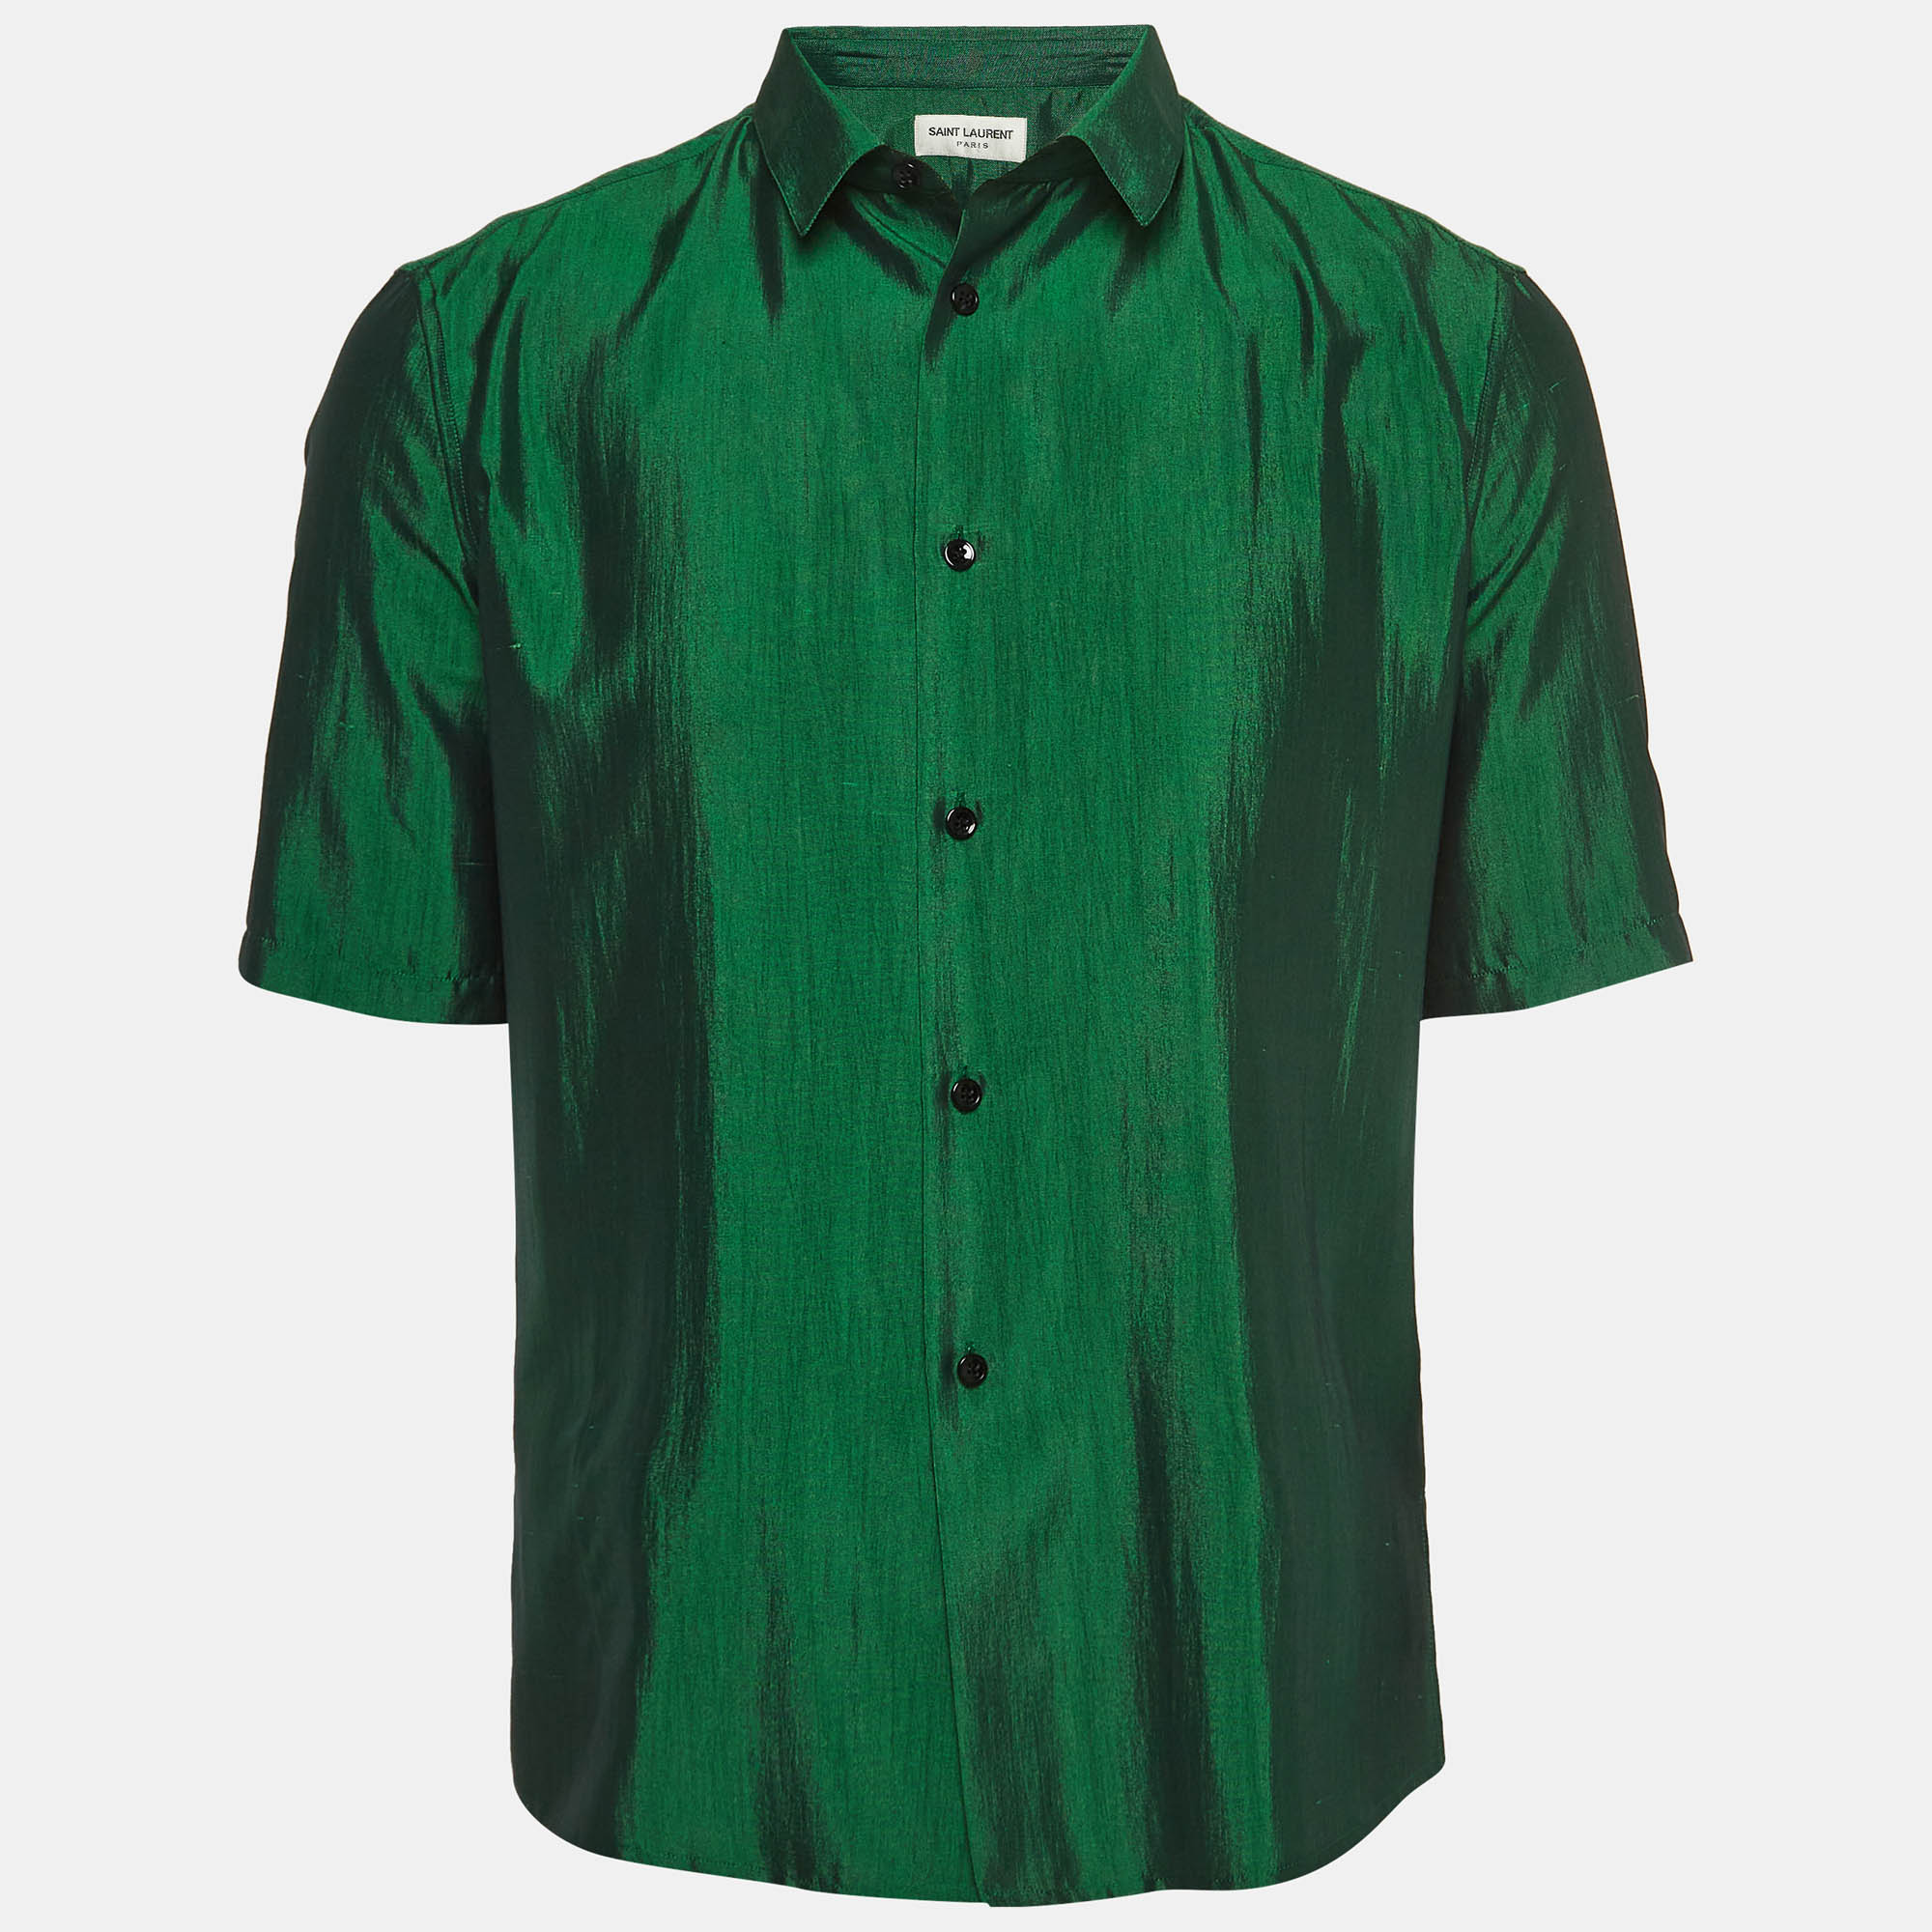 Saint laurent paris green shantung silk sport shirt s